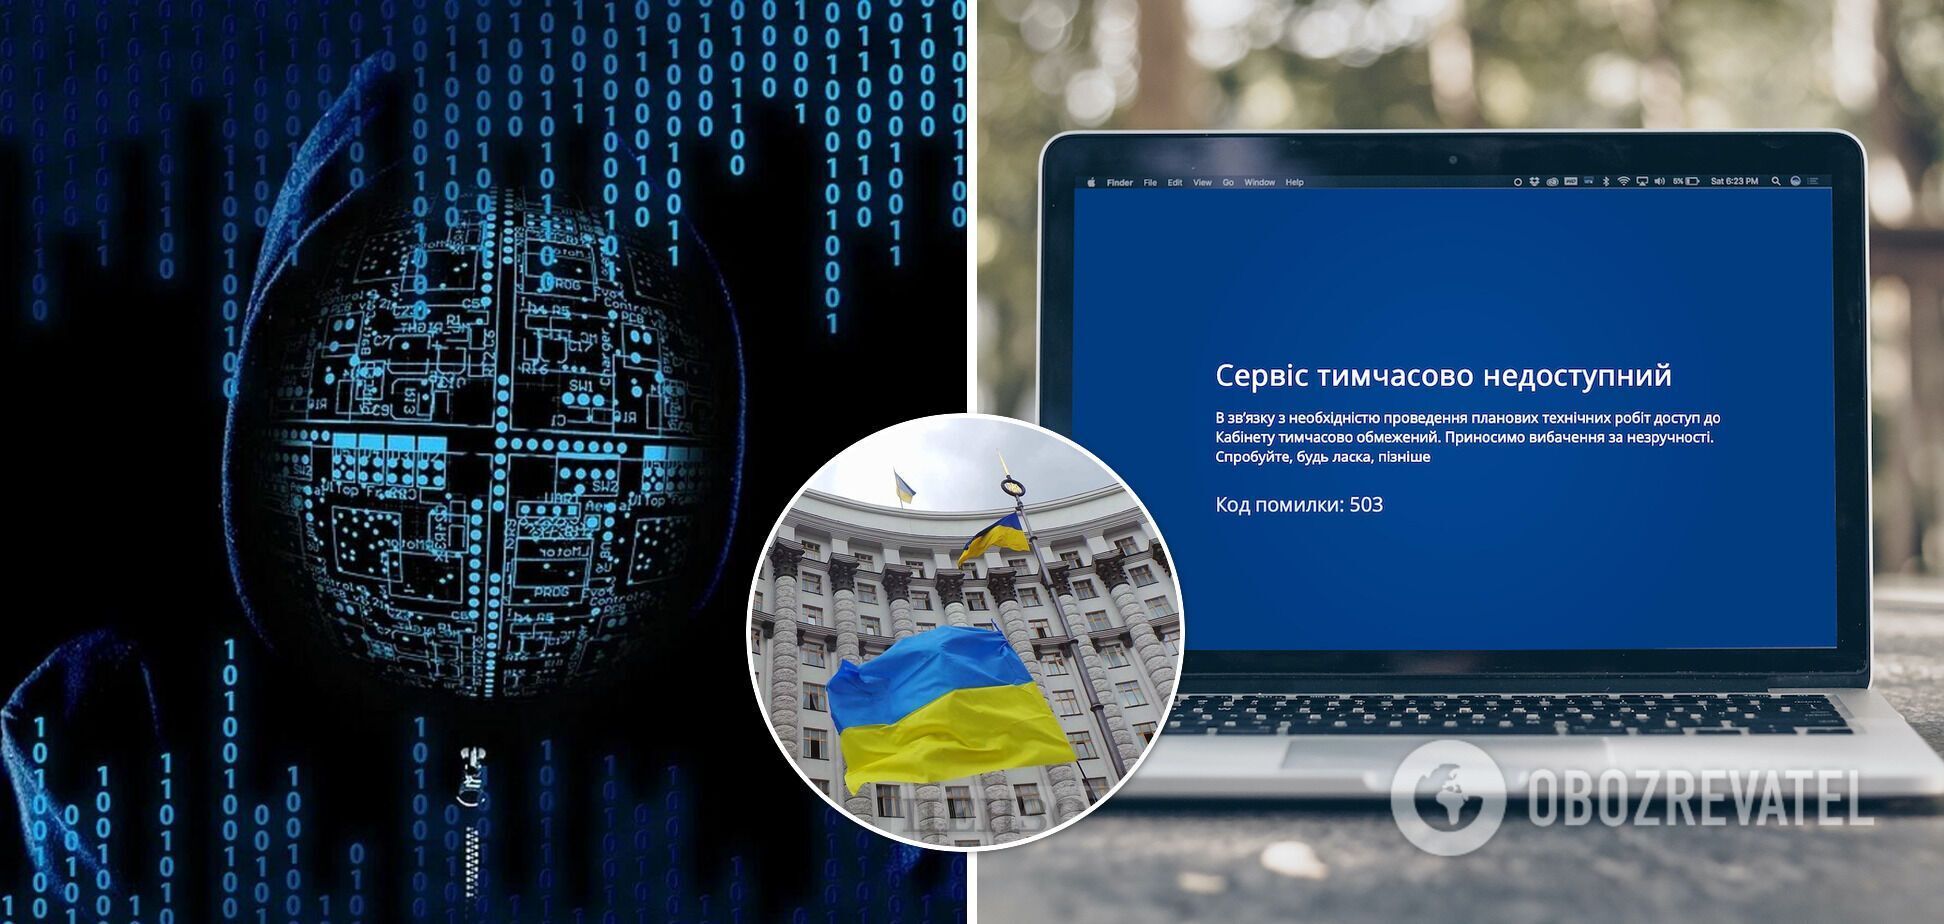 Кибератаке подверглись более 70 правительственных сайтов Украины